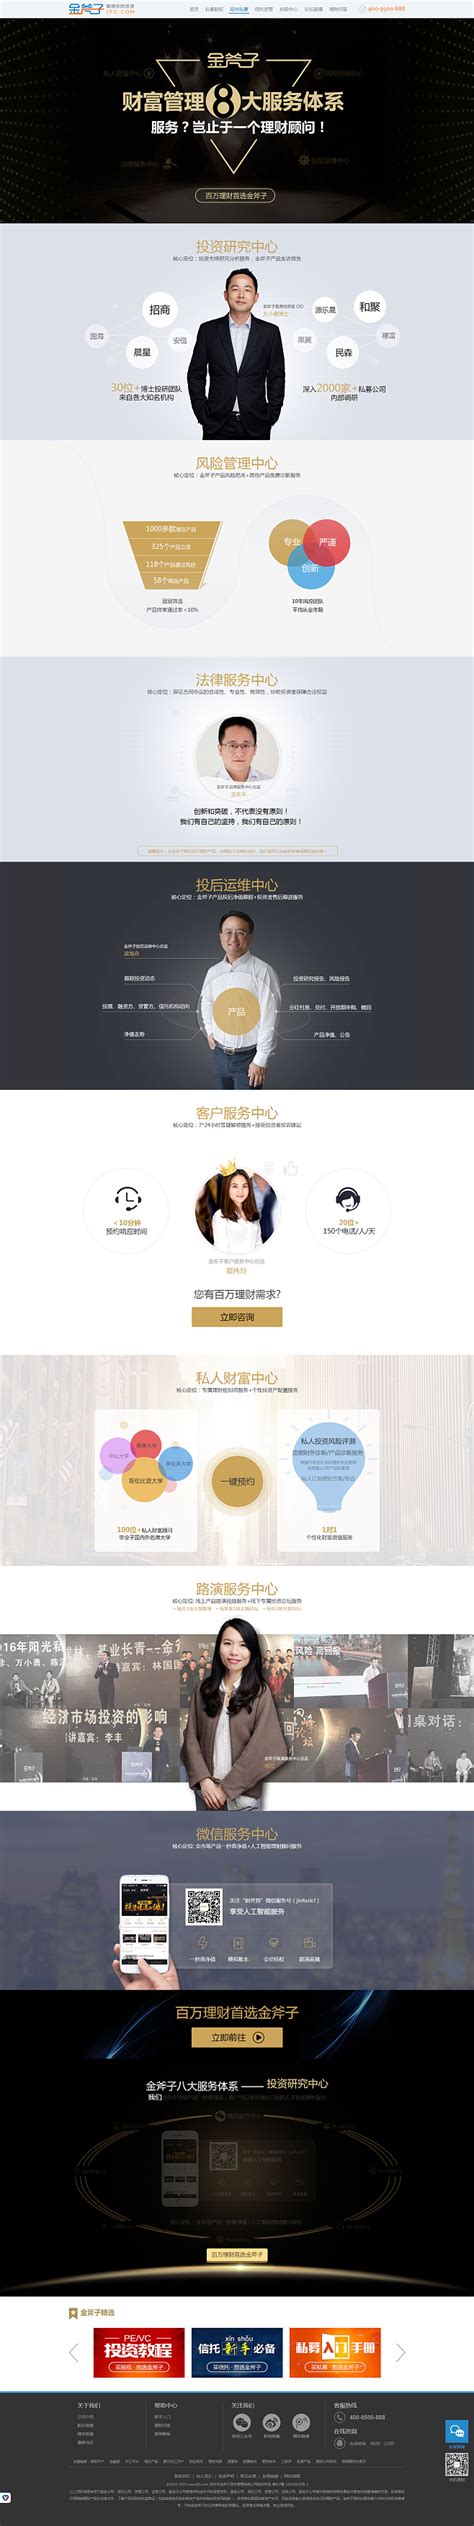 Jinfuzi - Crunchbase Company Profile & Funding